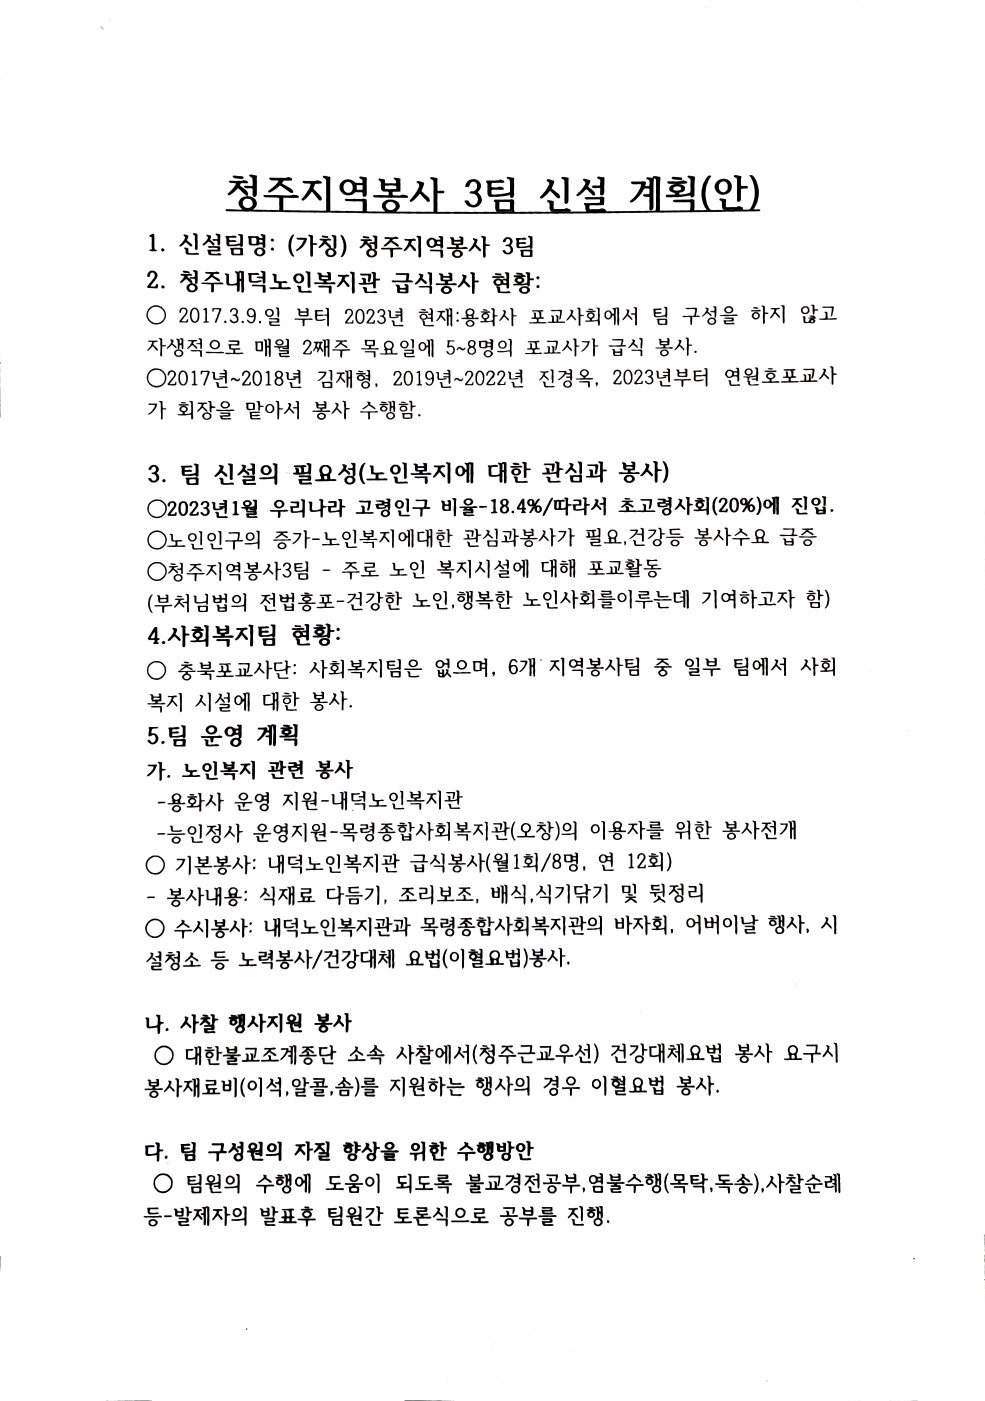 28호 자료1 청주지역봉사3팀 계획안.jpg